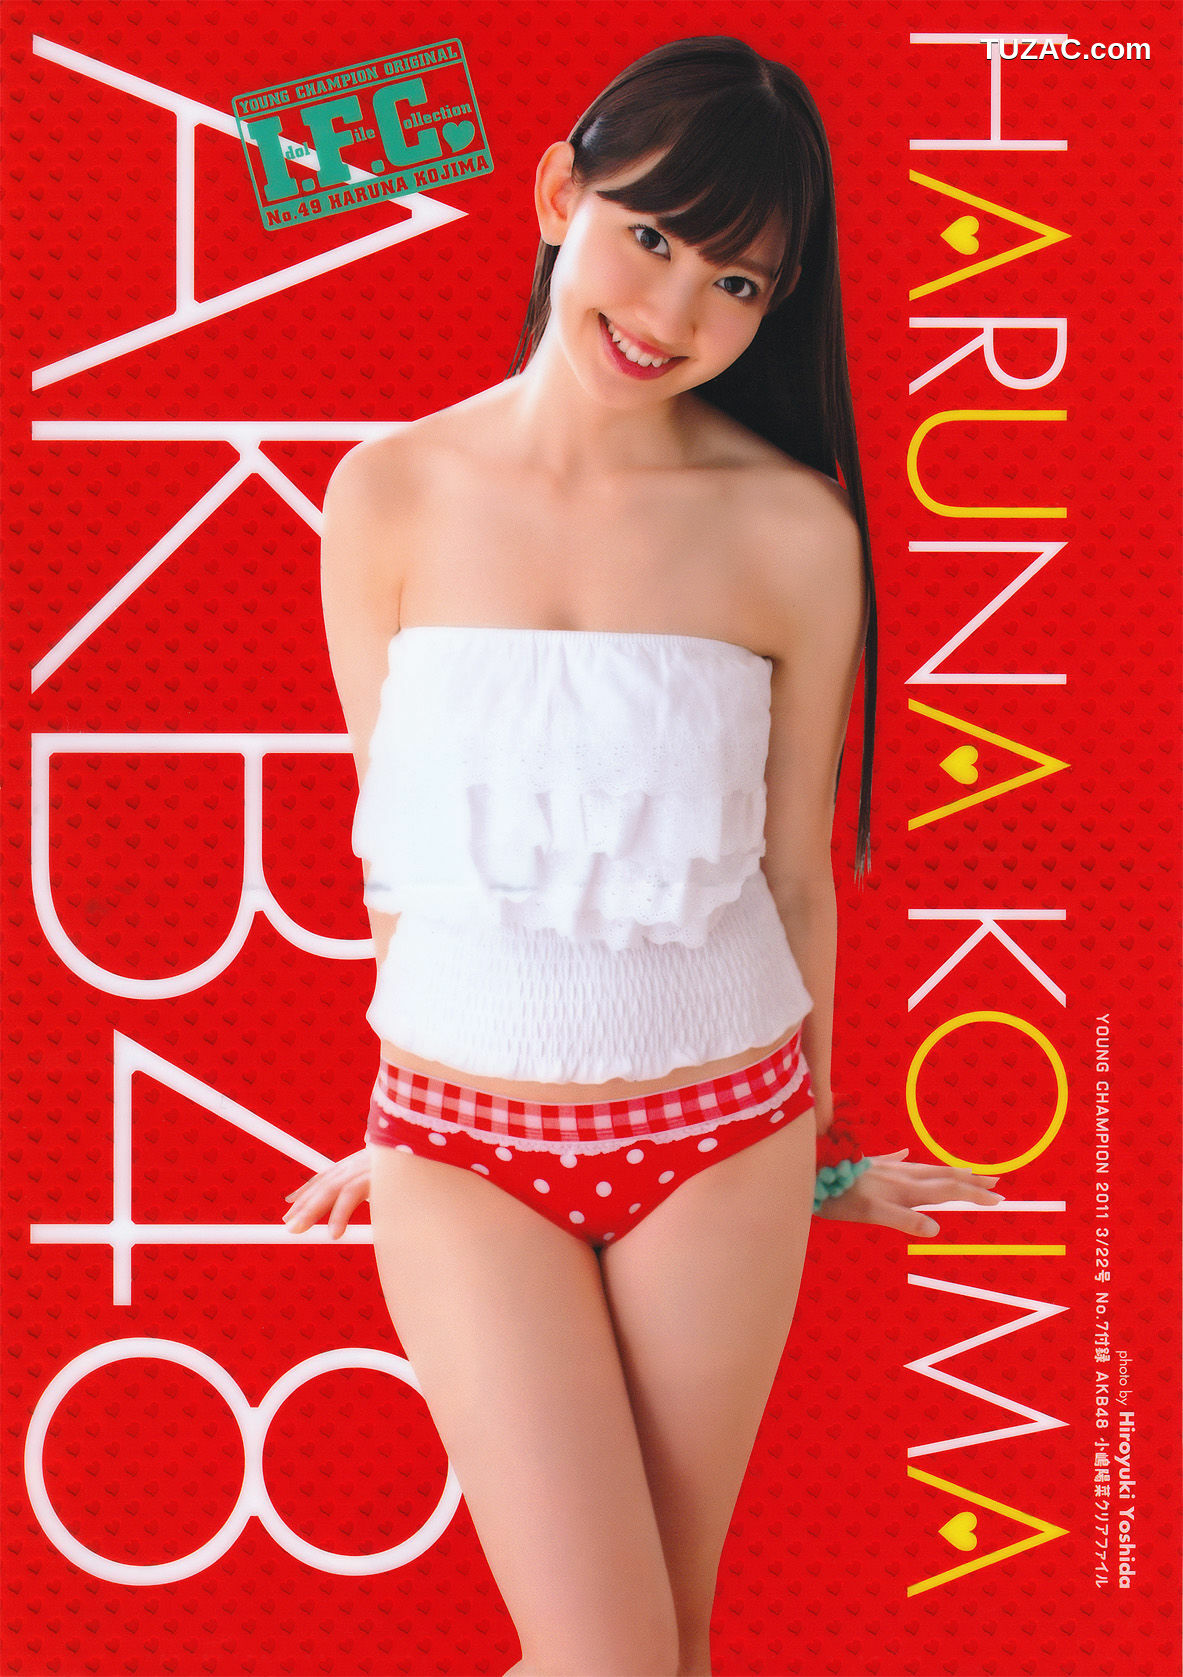 Young Champion杂志写真_ 小嶋陽菜 Haruna Kojima 2011年No.07 写真杂志[15P]